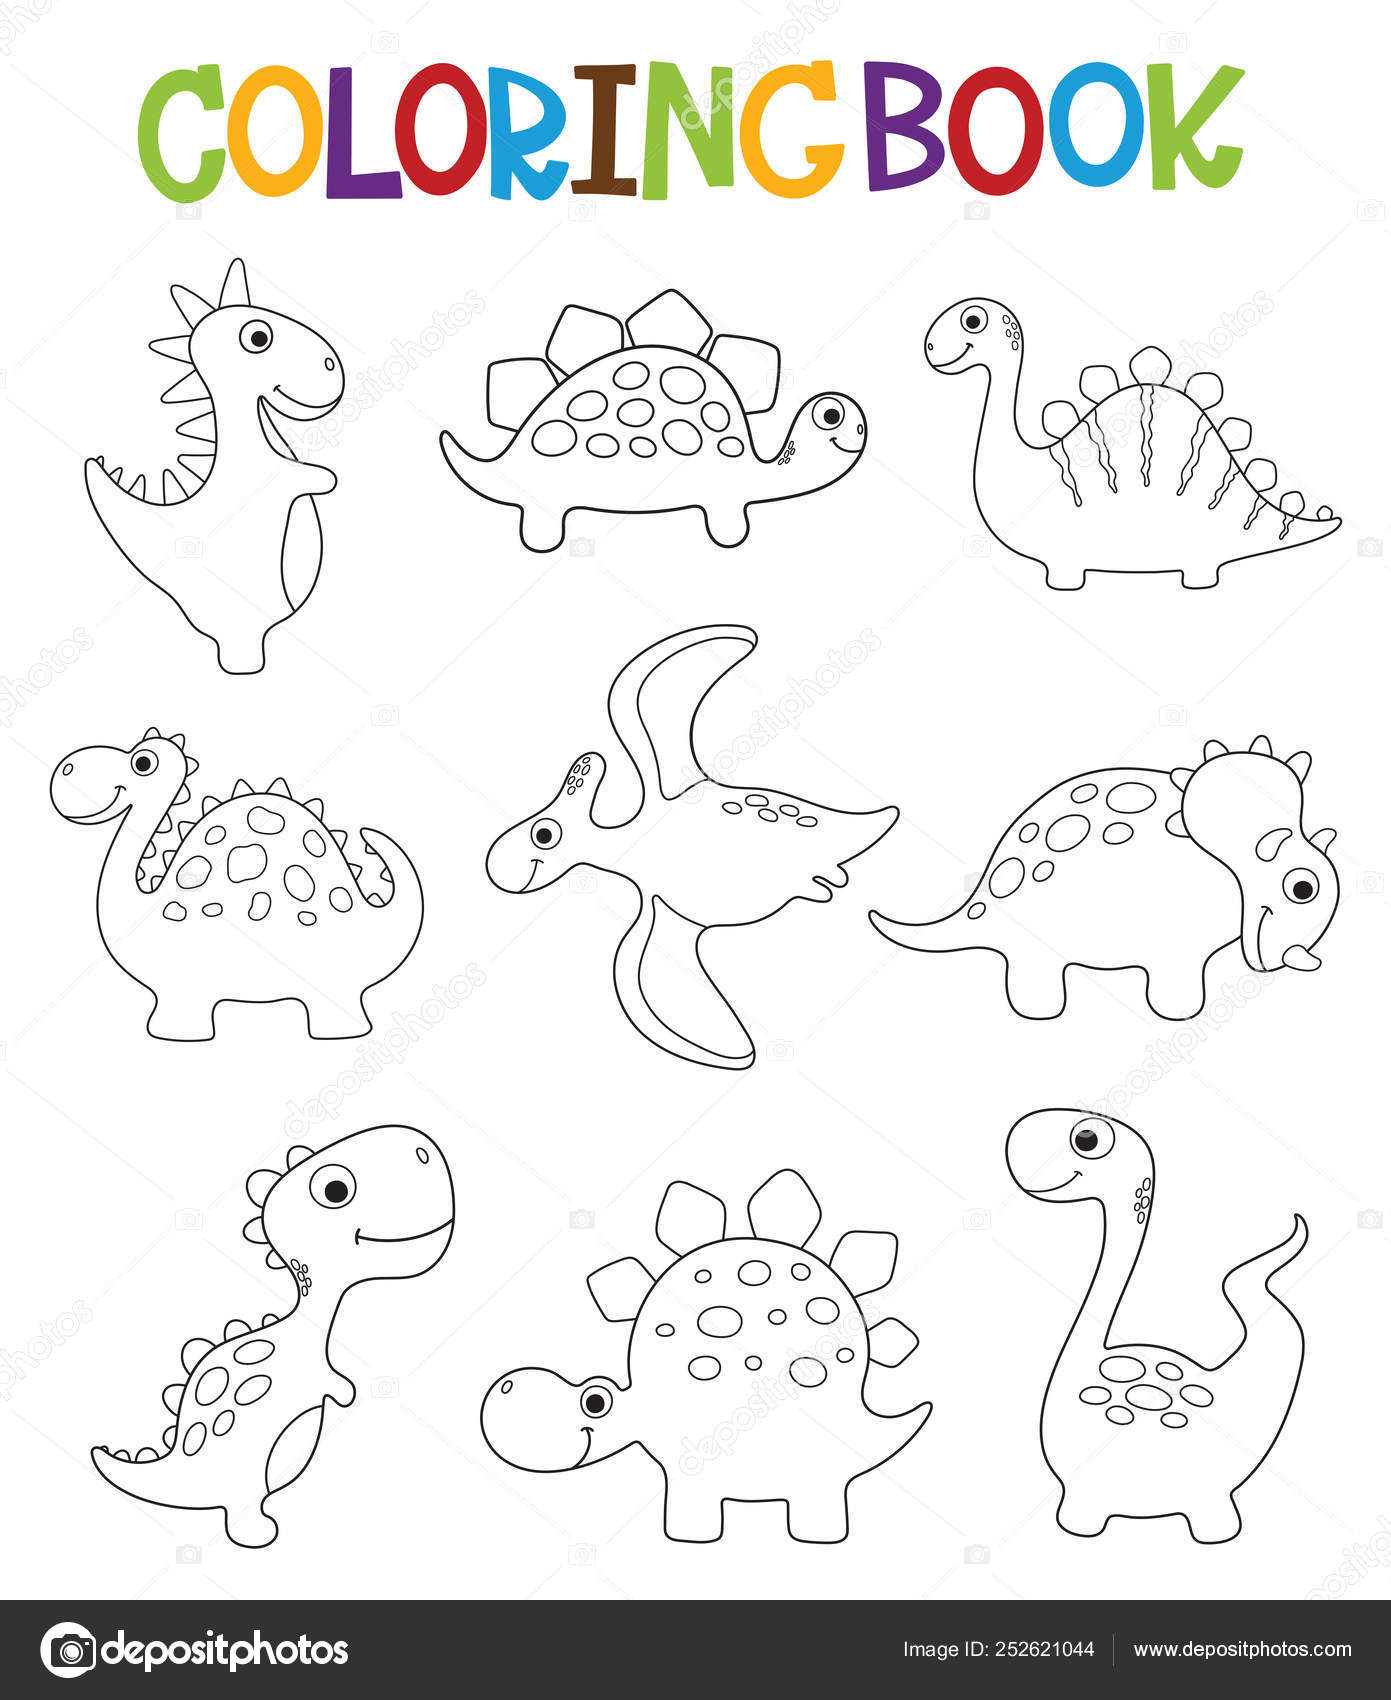 Colorir Animada - Dinossauros